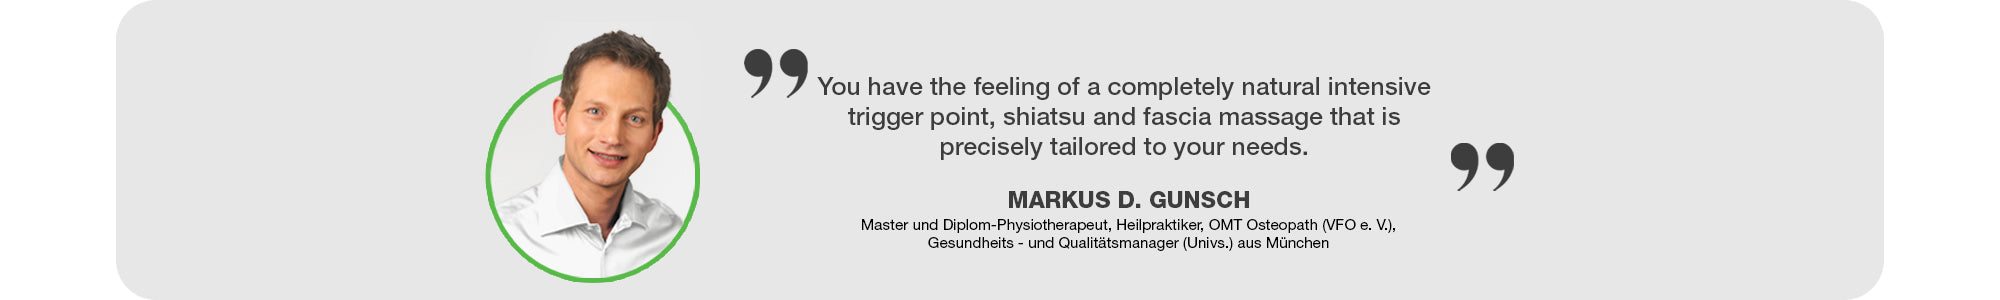 expert recommends Donnerberg Premium neck massager